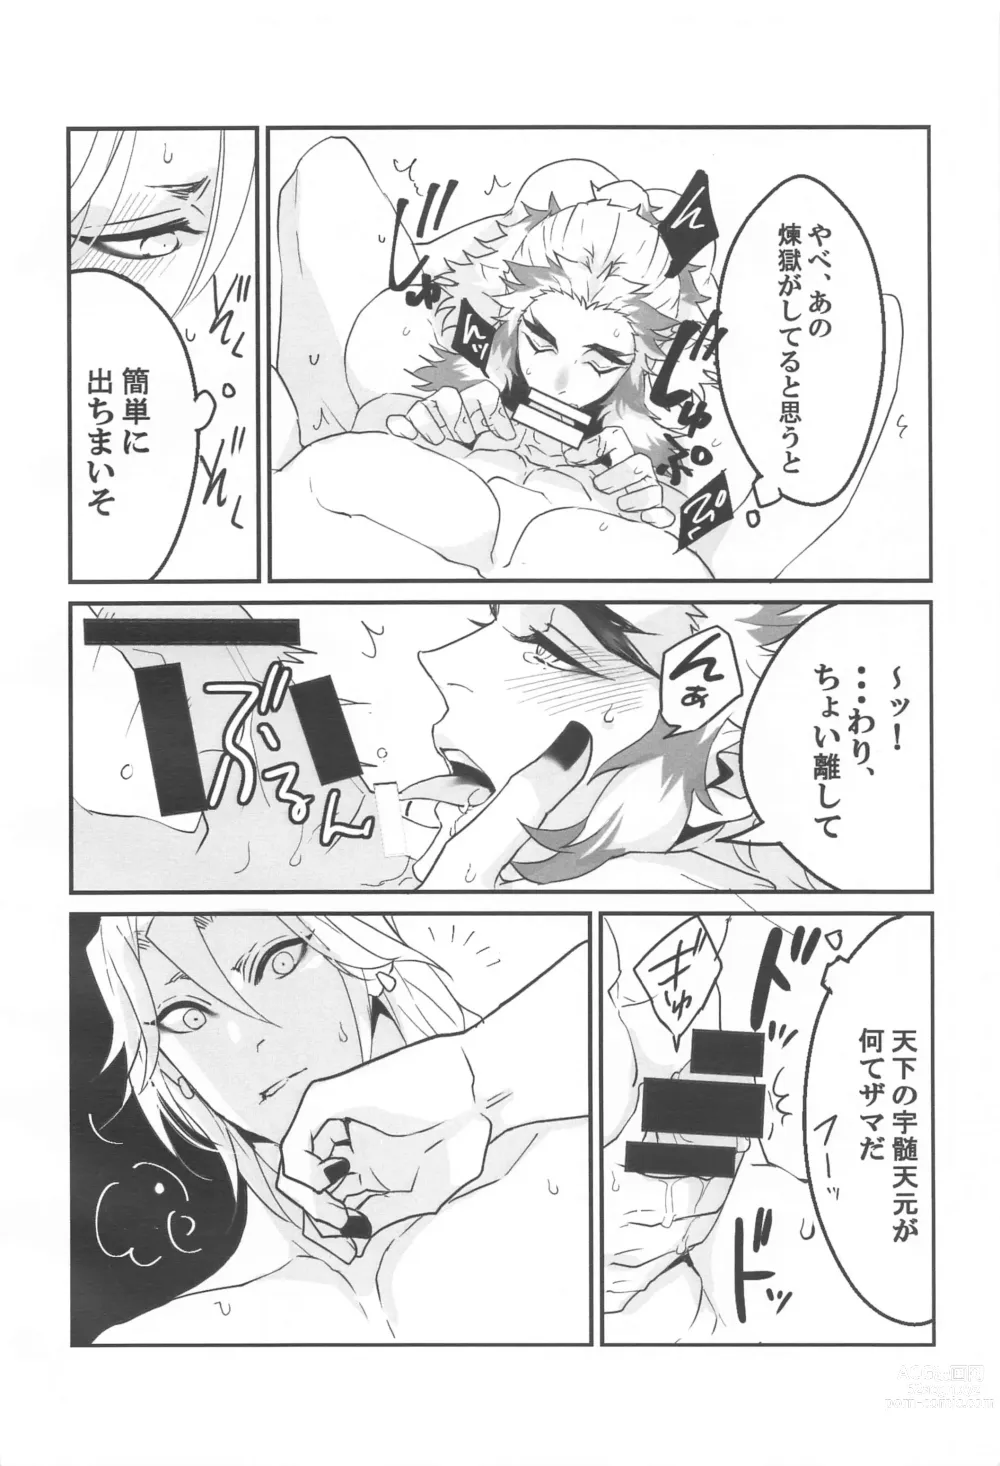 Page 11 of doujinshi ●● Shinai to Derarenai Heya